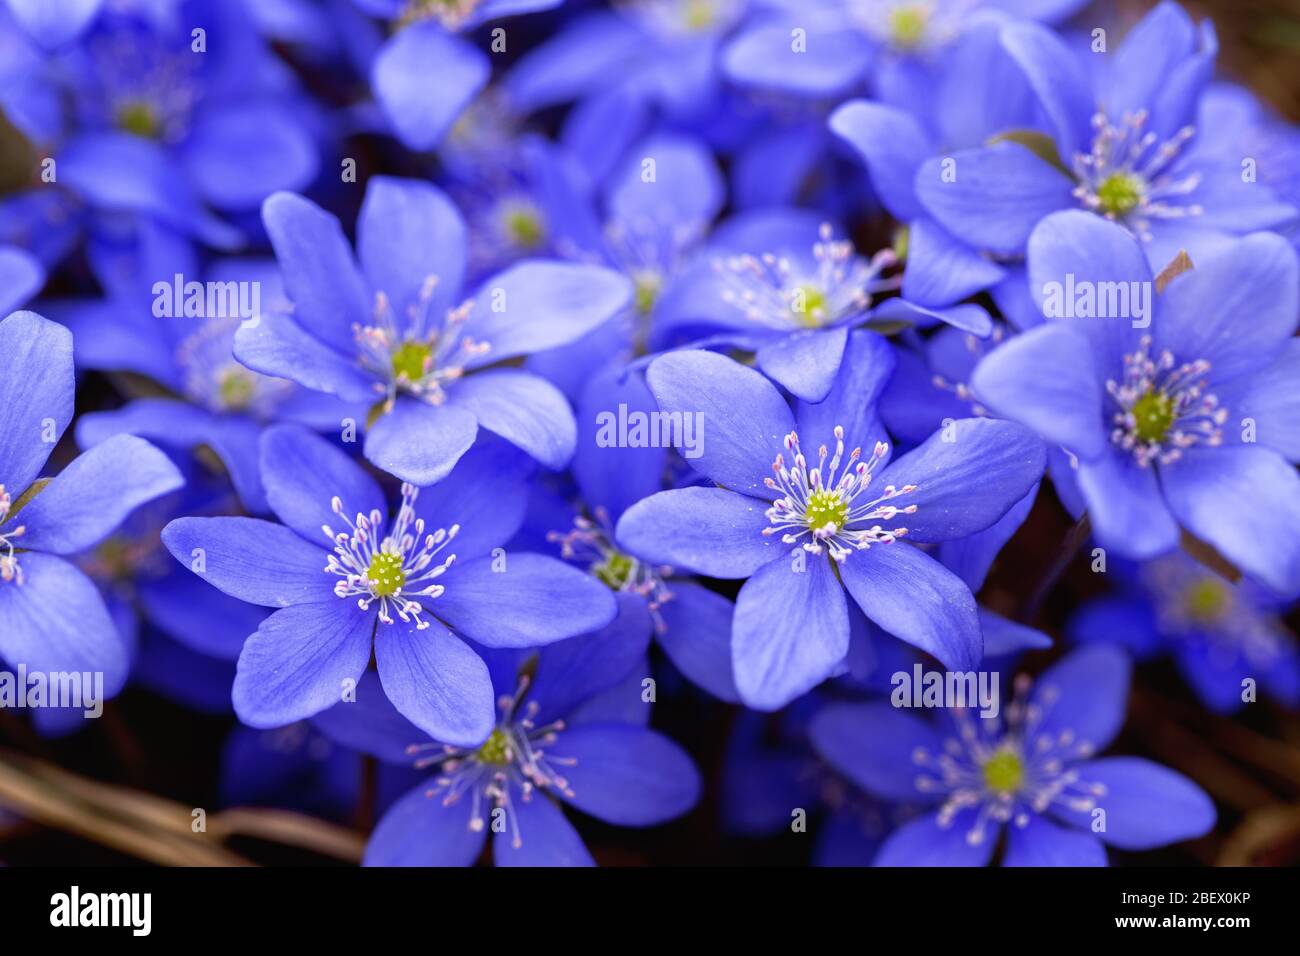 Premières fleurs au printemps hepatica. Fleurs bleues fleuries au printemps Banque D'Images